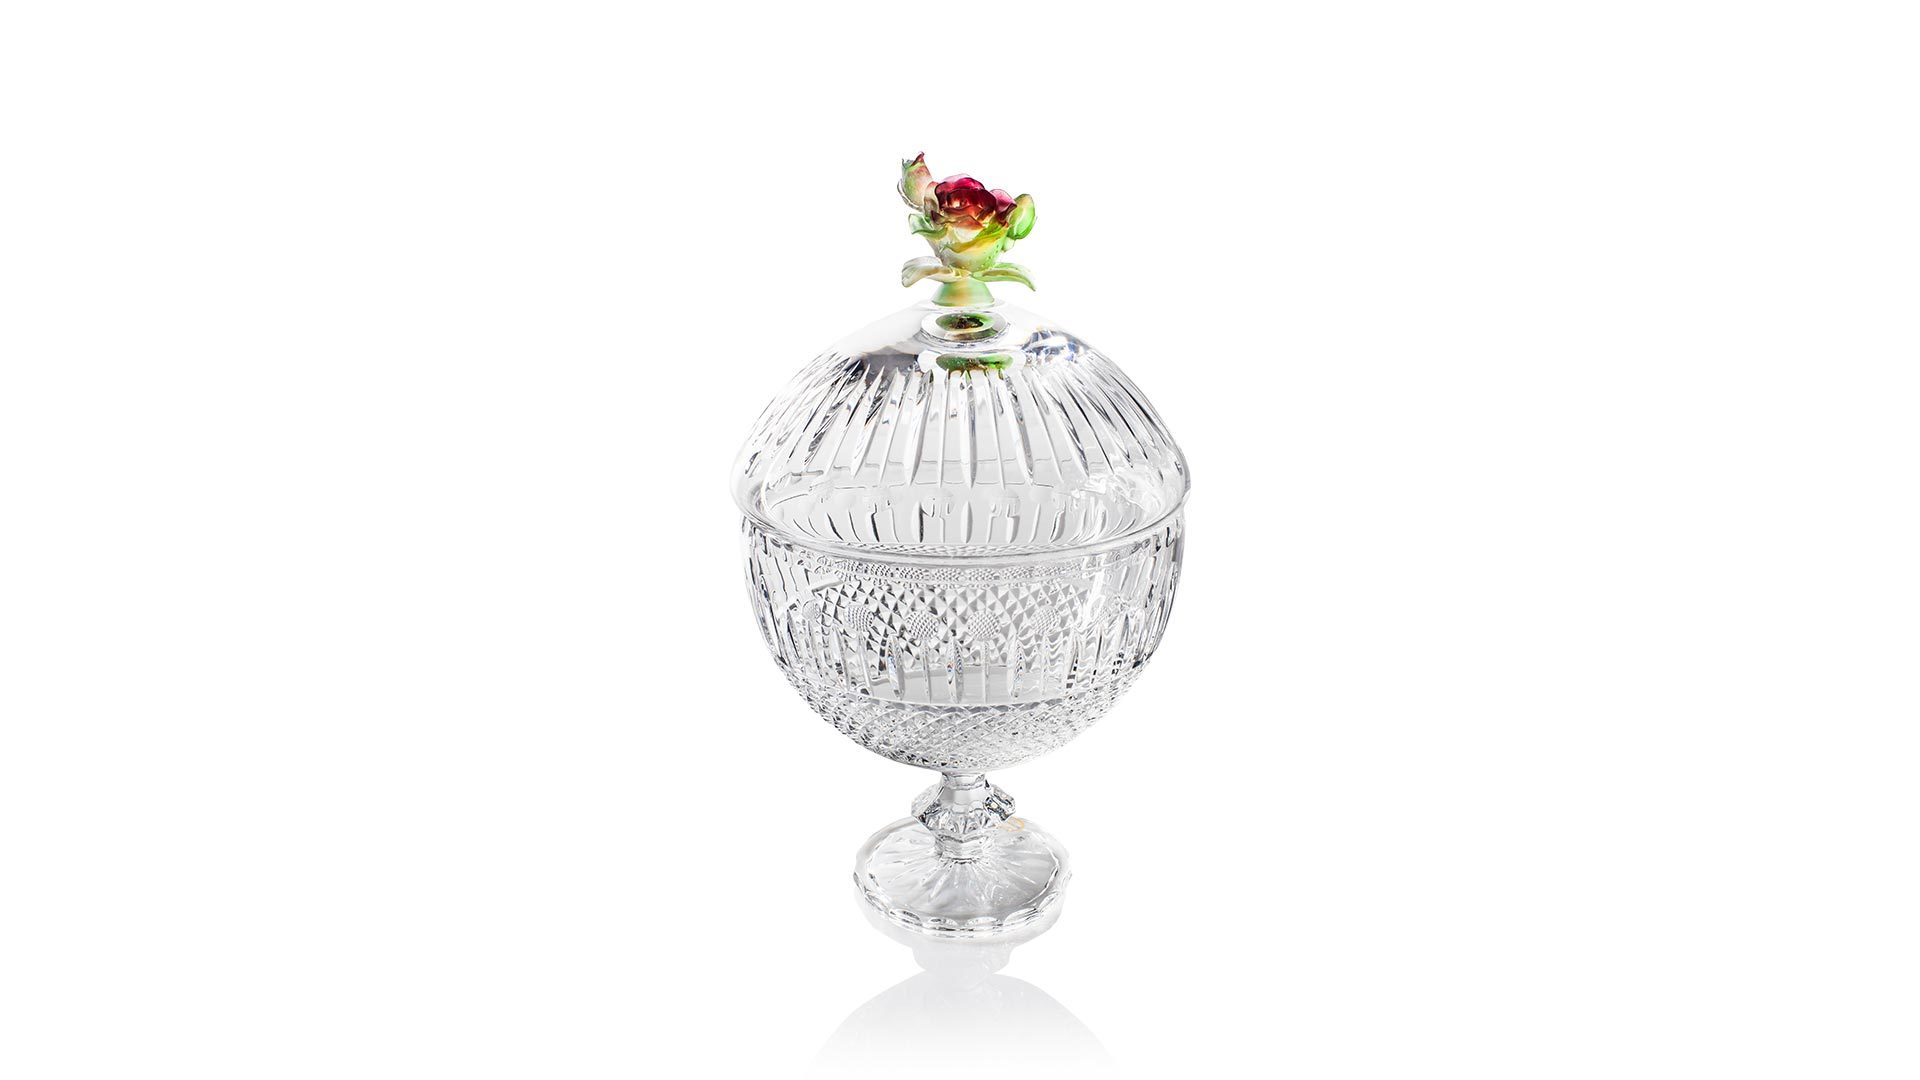 Конфетница с крышкой Cristal de Paris Иван, Диамант 22см, крышка роза, красно-зеленая